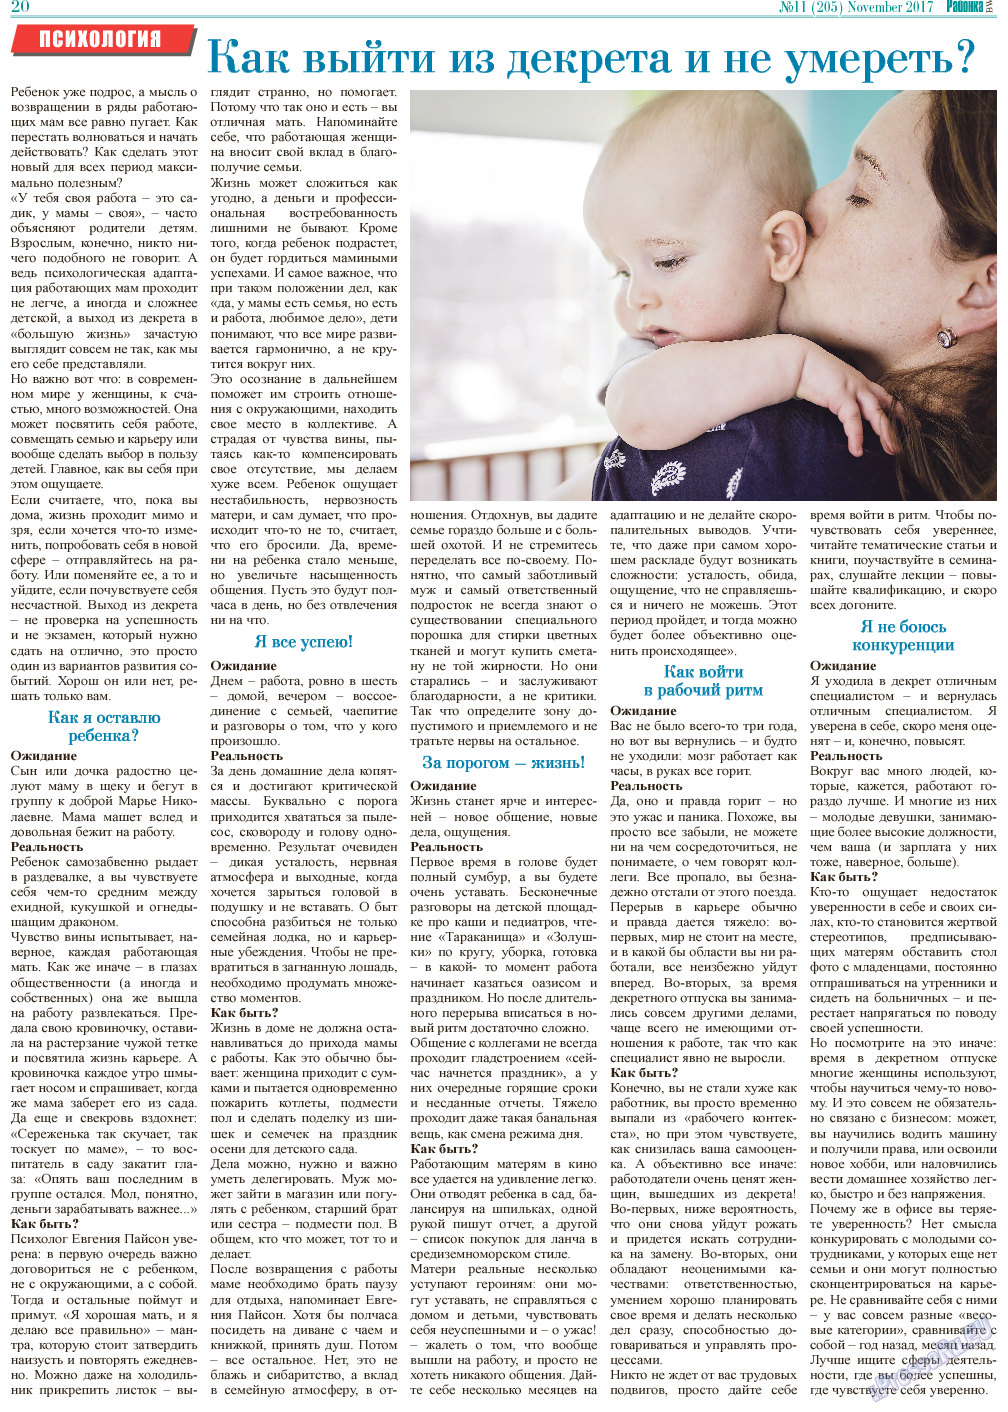 Районка-Süd-West, газета. 2017 №11 стр.20